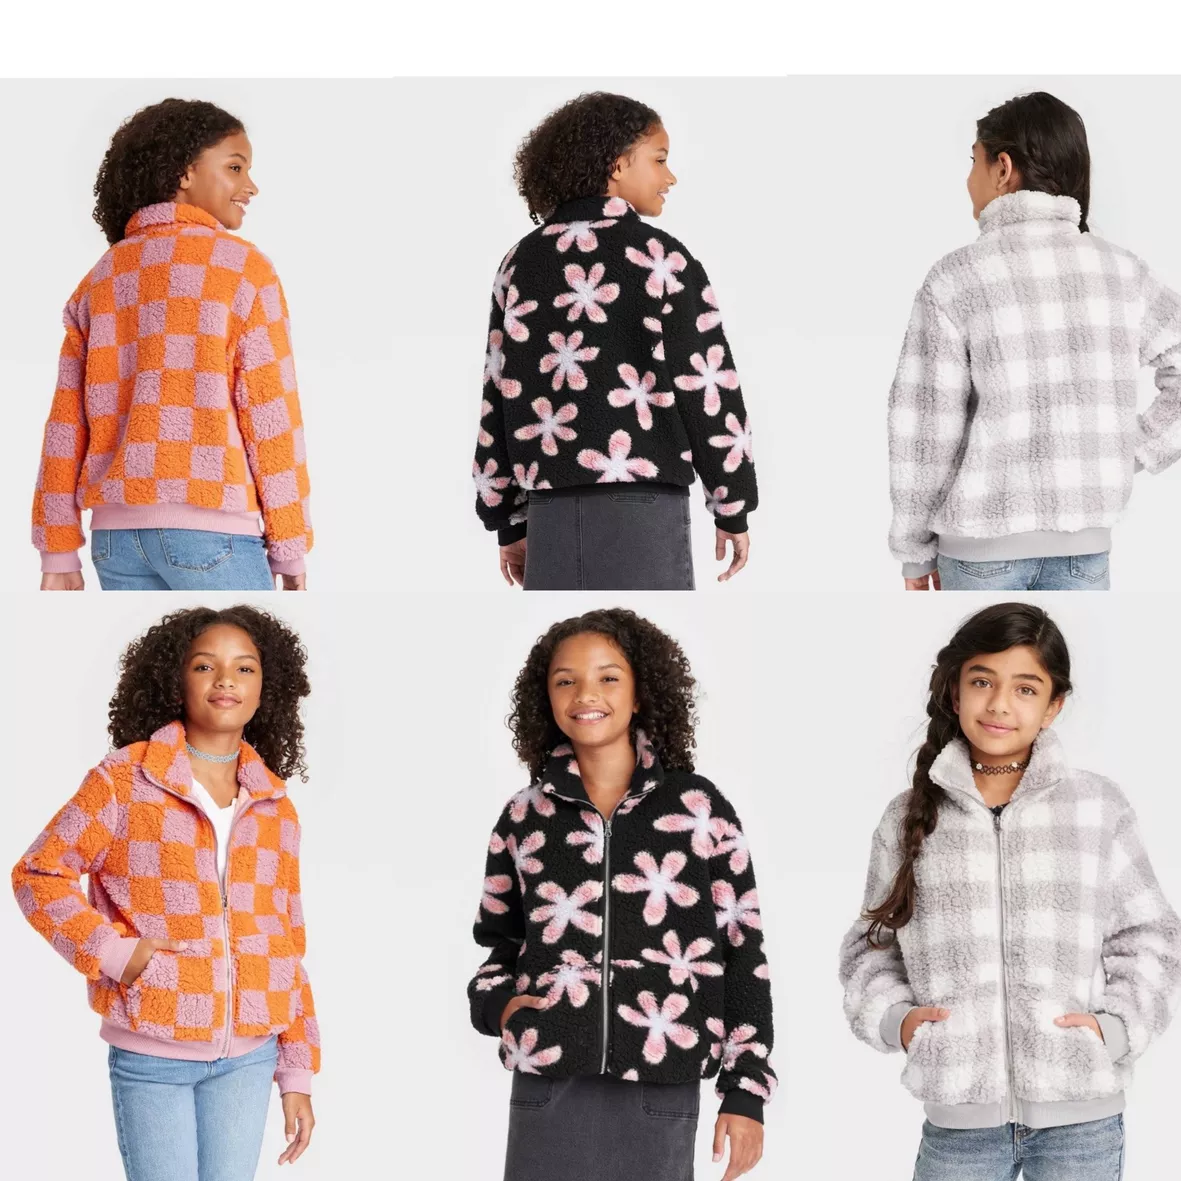 Girls Printed Orange Fleece Jacket